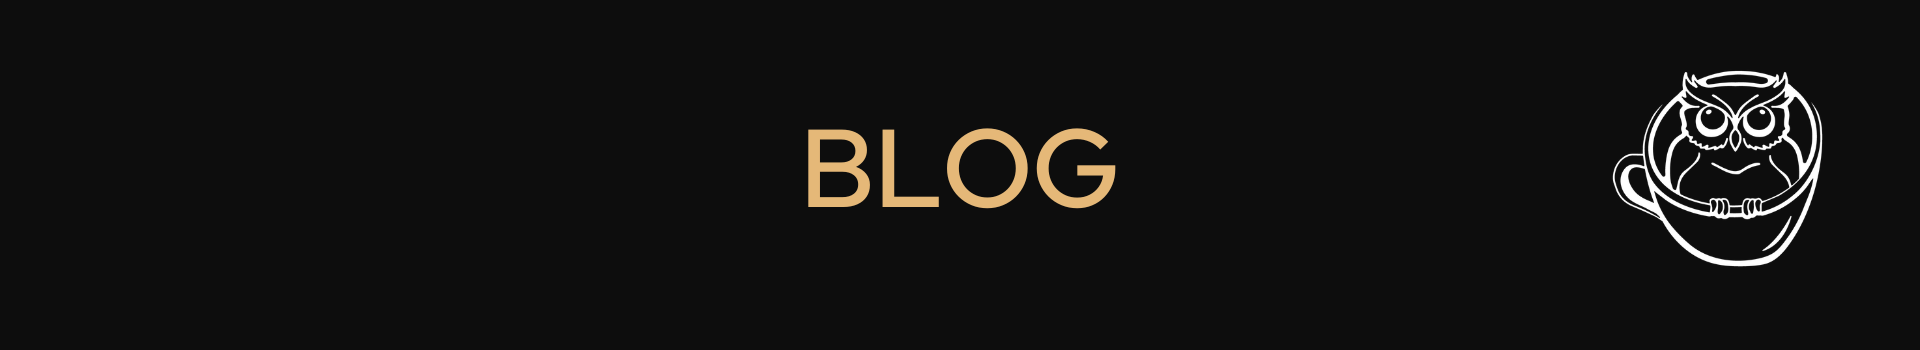 blog header